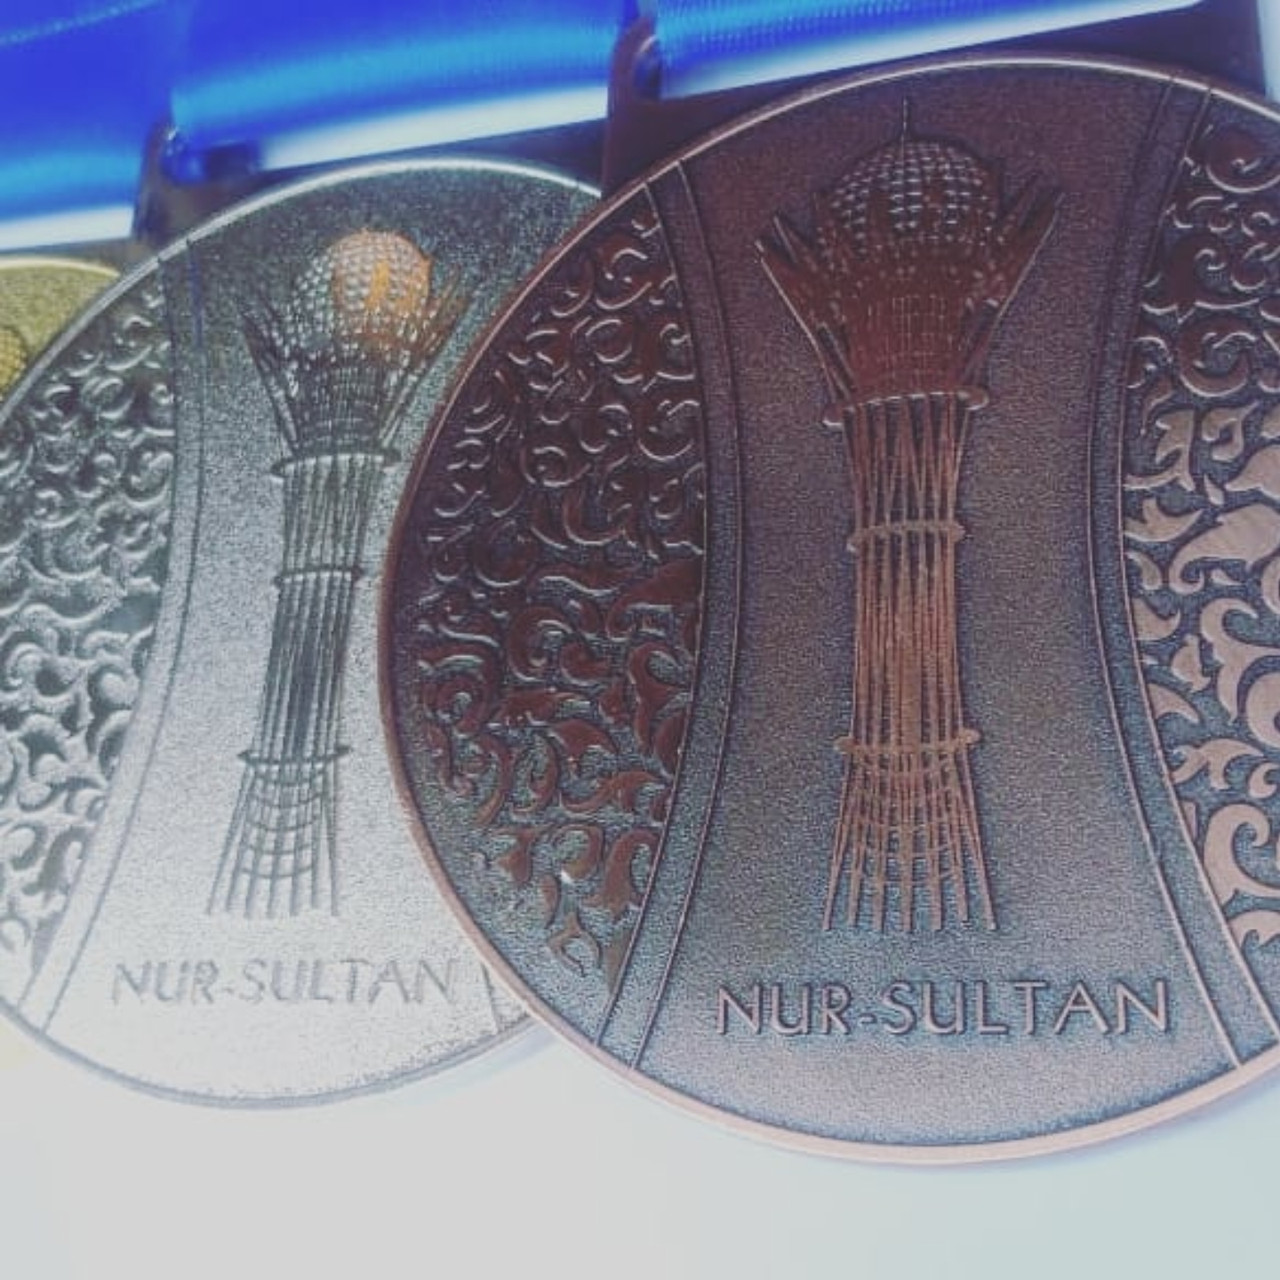 Нур-султан медаль